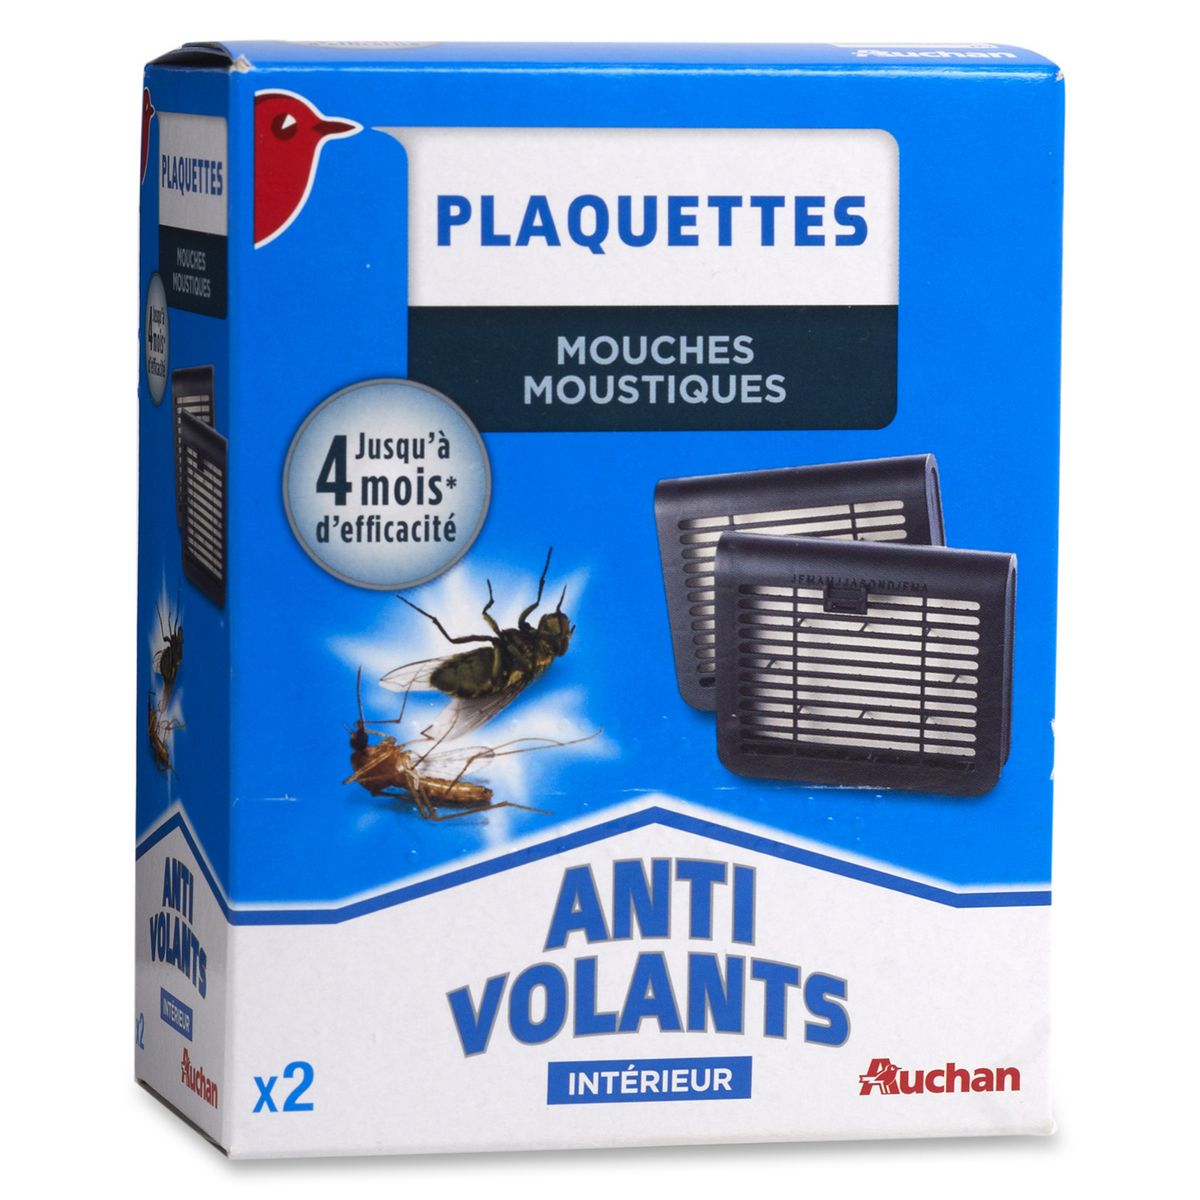 AUCHAN Plaquettes anti-volants mouches & moustiques intérieur efficace 2x4  mois 2 paquettes pas cher 